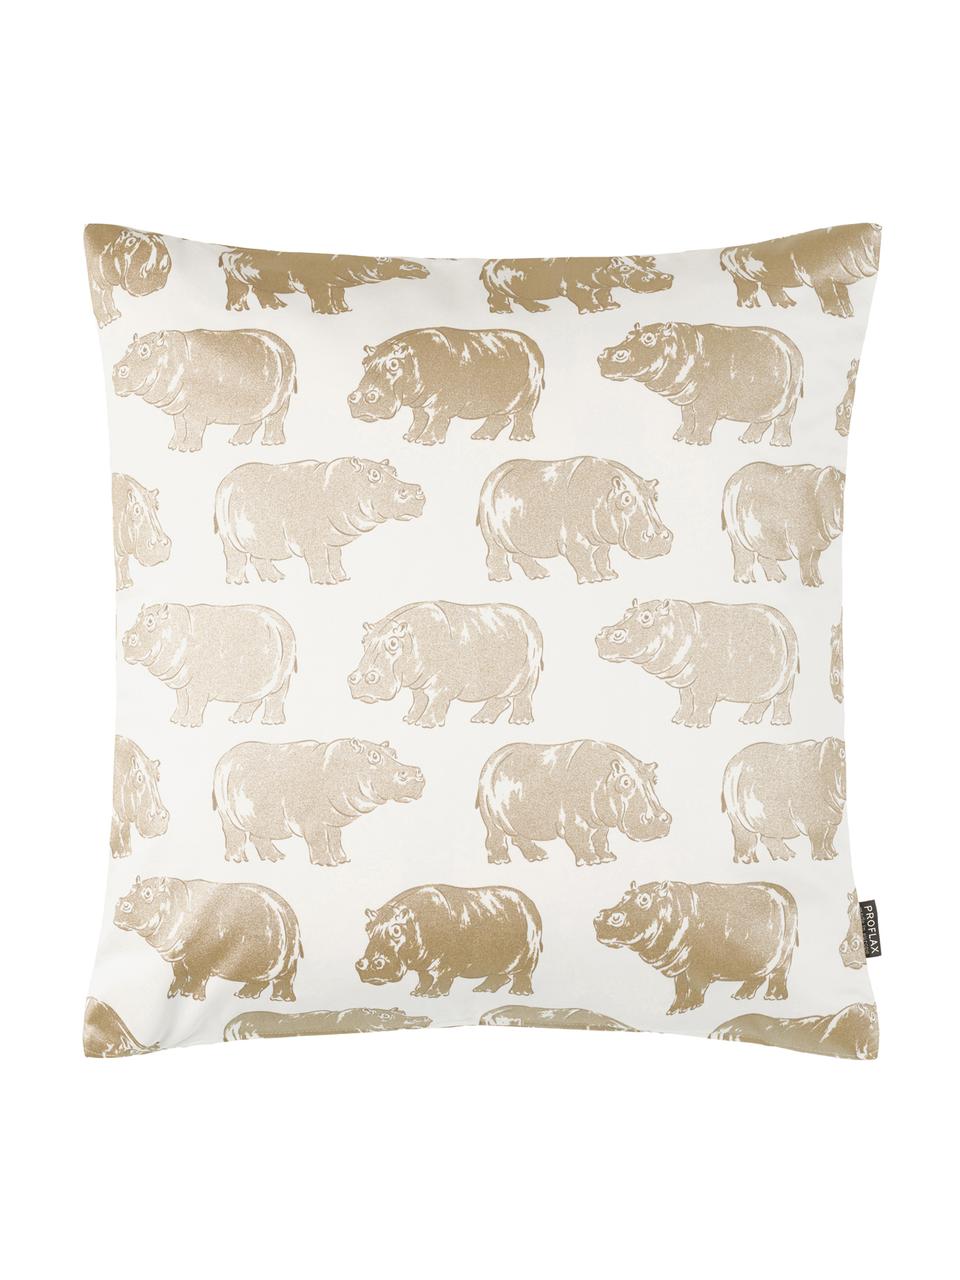 Kissenhülle Hippo mit Tierdruck in Gold/Creme, Baumwolle, Weiß, Goldfarben, 40 x 40 cm